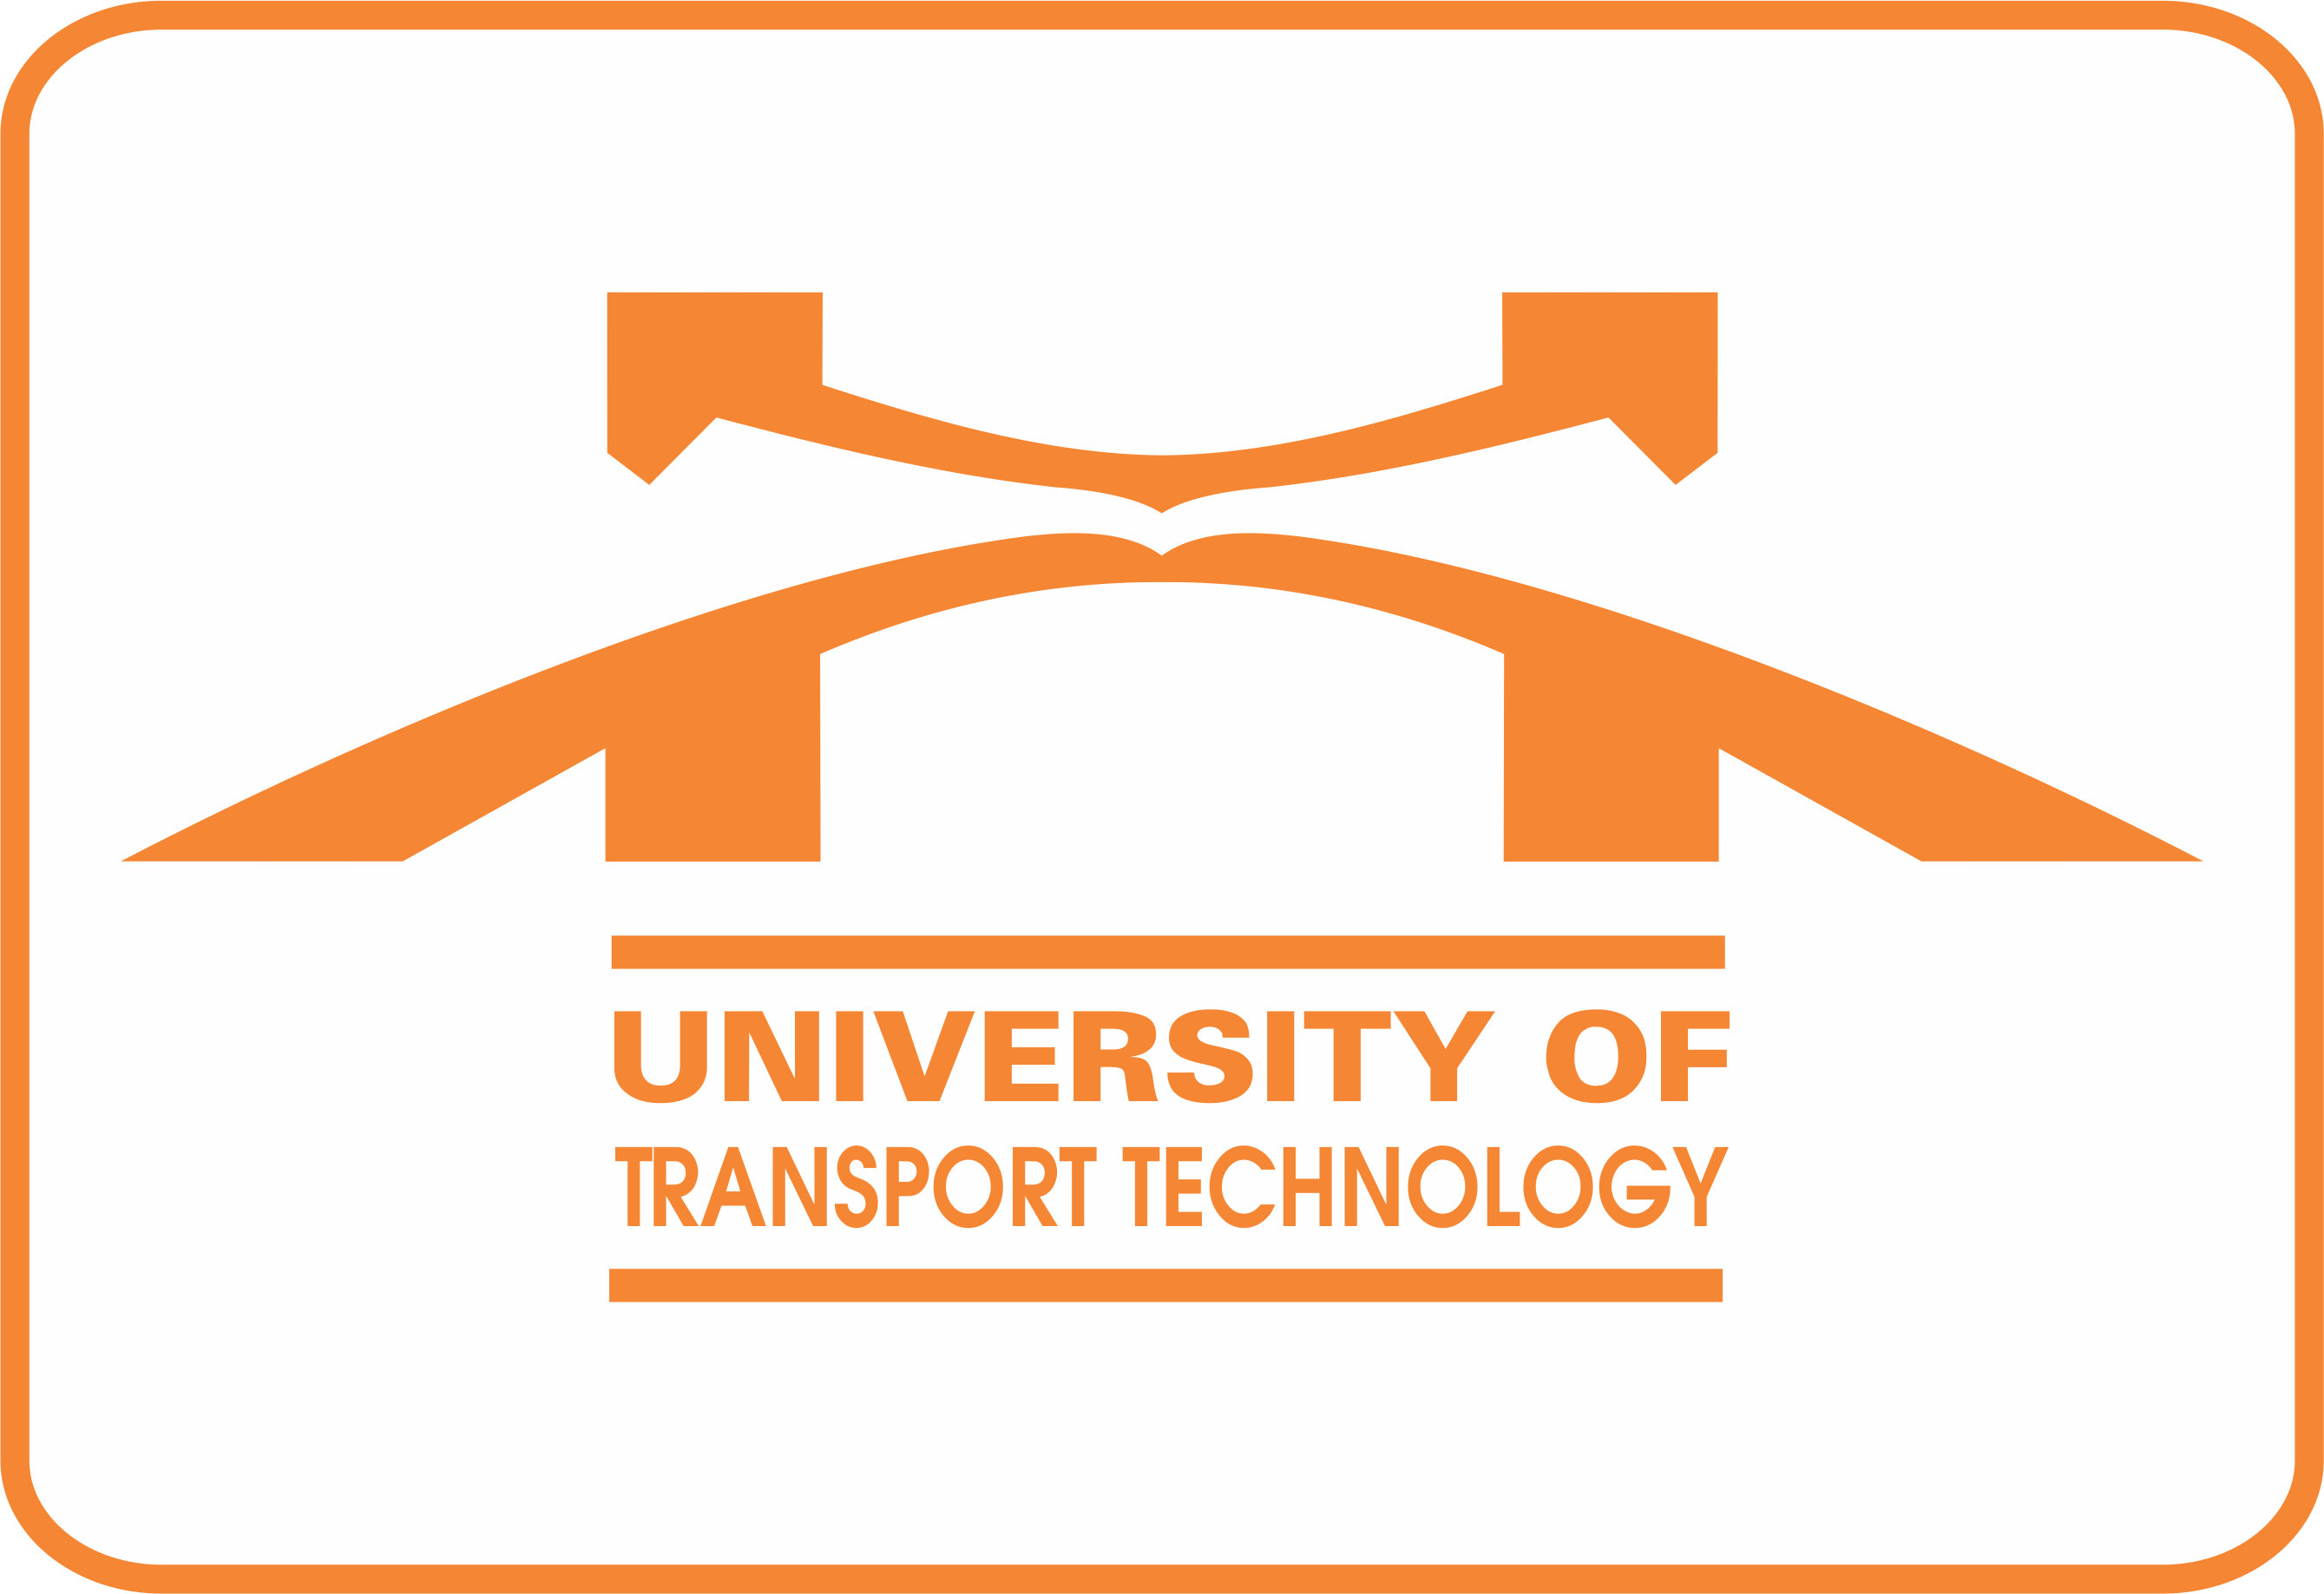 Quyết định giao nhiệm vụ đào tạo nghiệp vụ Thanh tra cơ bản chuyên ngành Giao thông vận tải cho trường Đại học Công nghệ giao thông vận tải